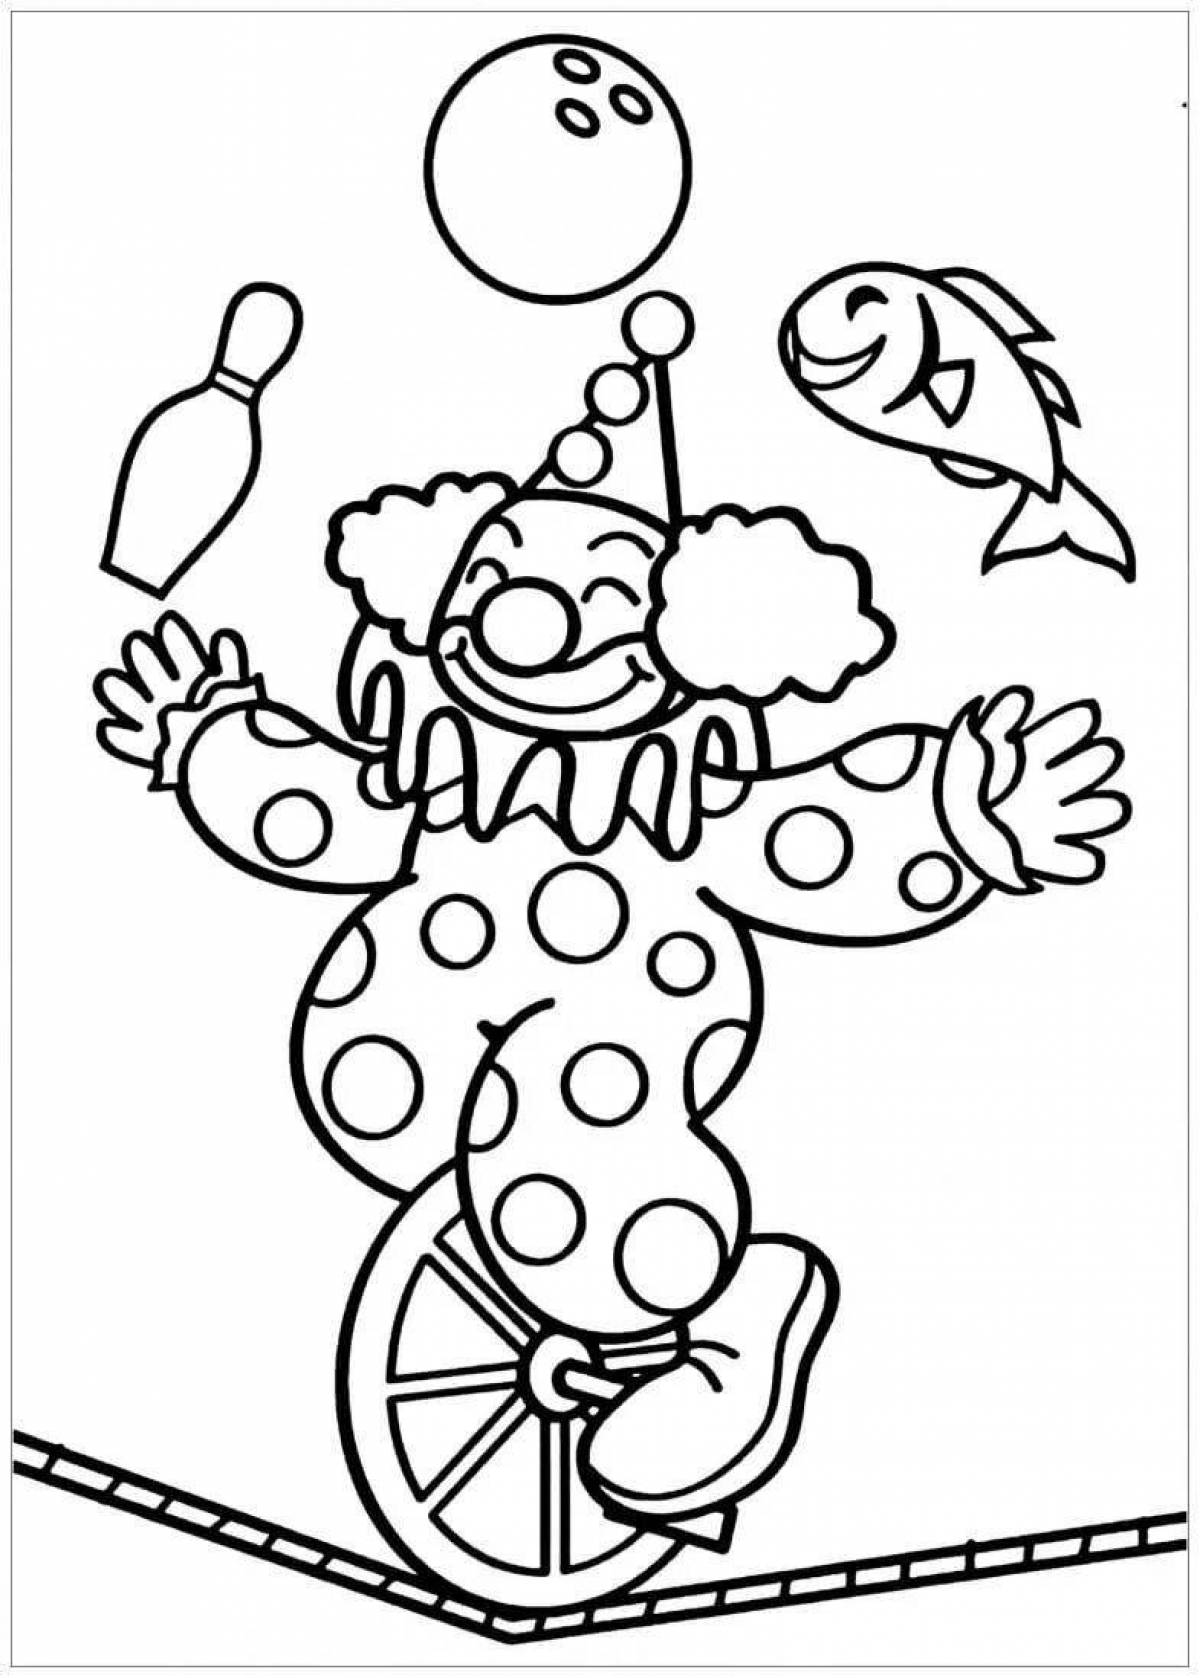 Развлекательная раскраска клоуна для детей 6-7 лет